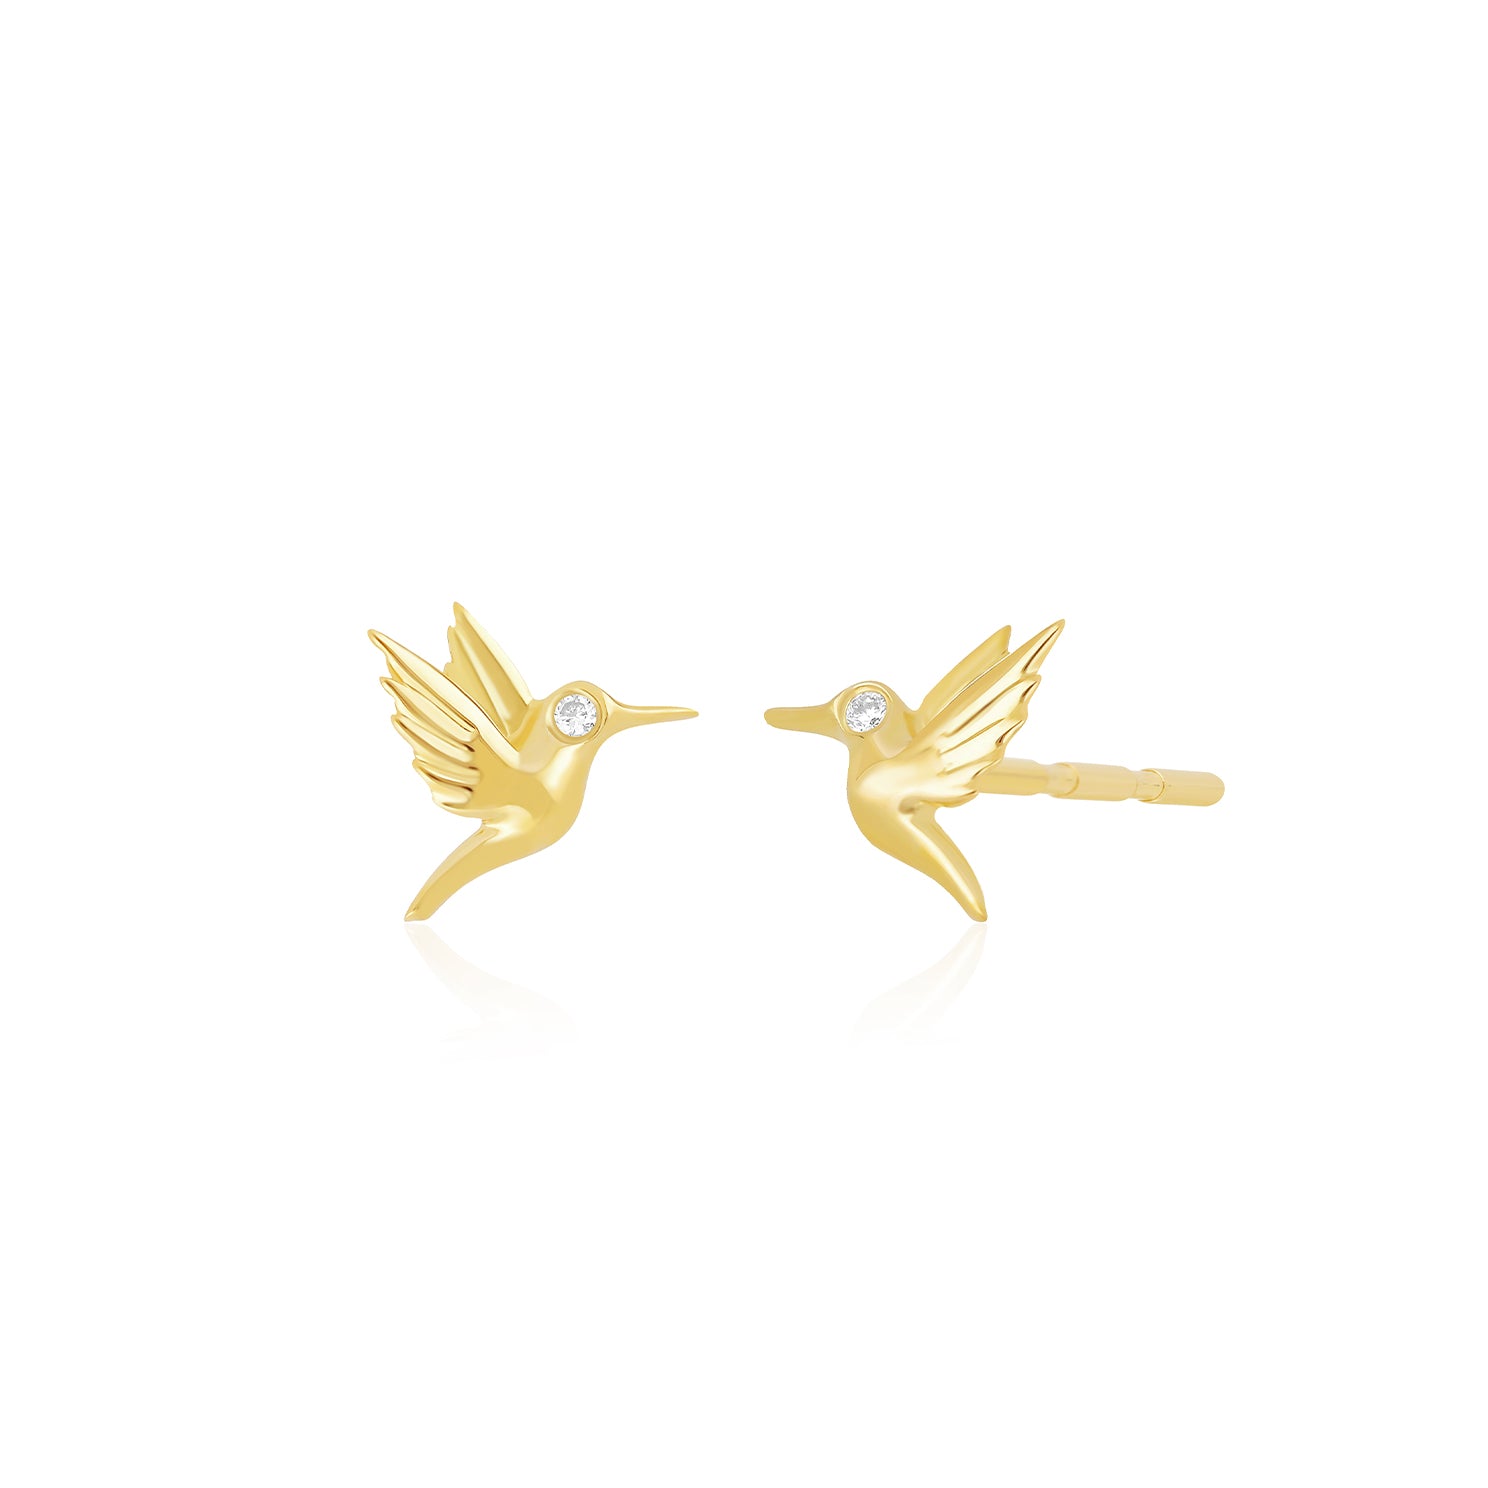 Mini Hummingbird Stud Earring With Diamond Eye in 14k yellow gold